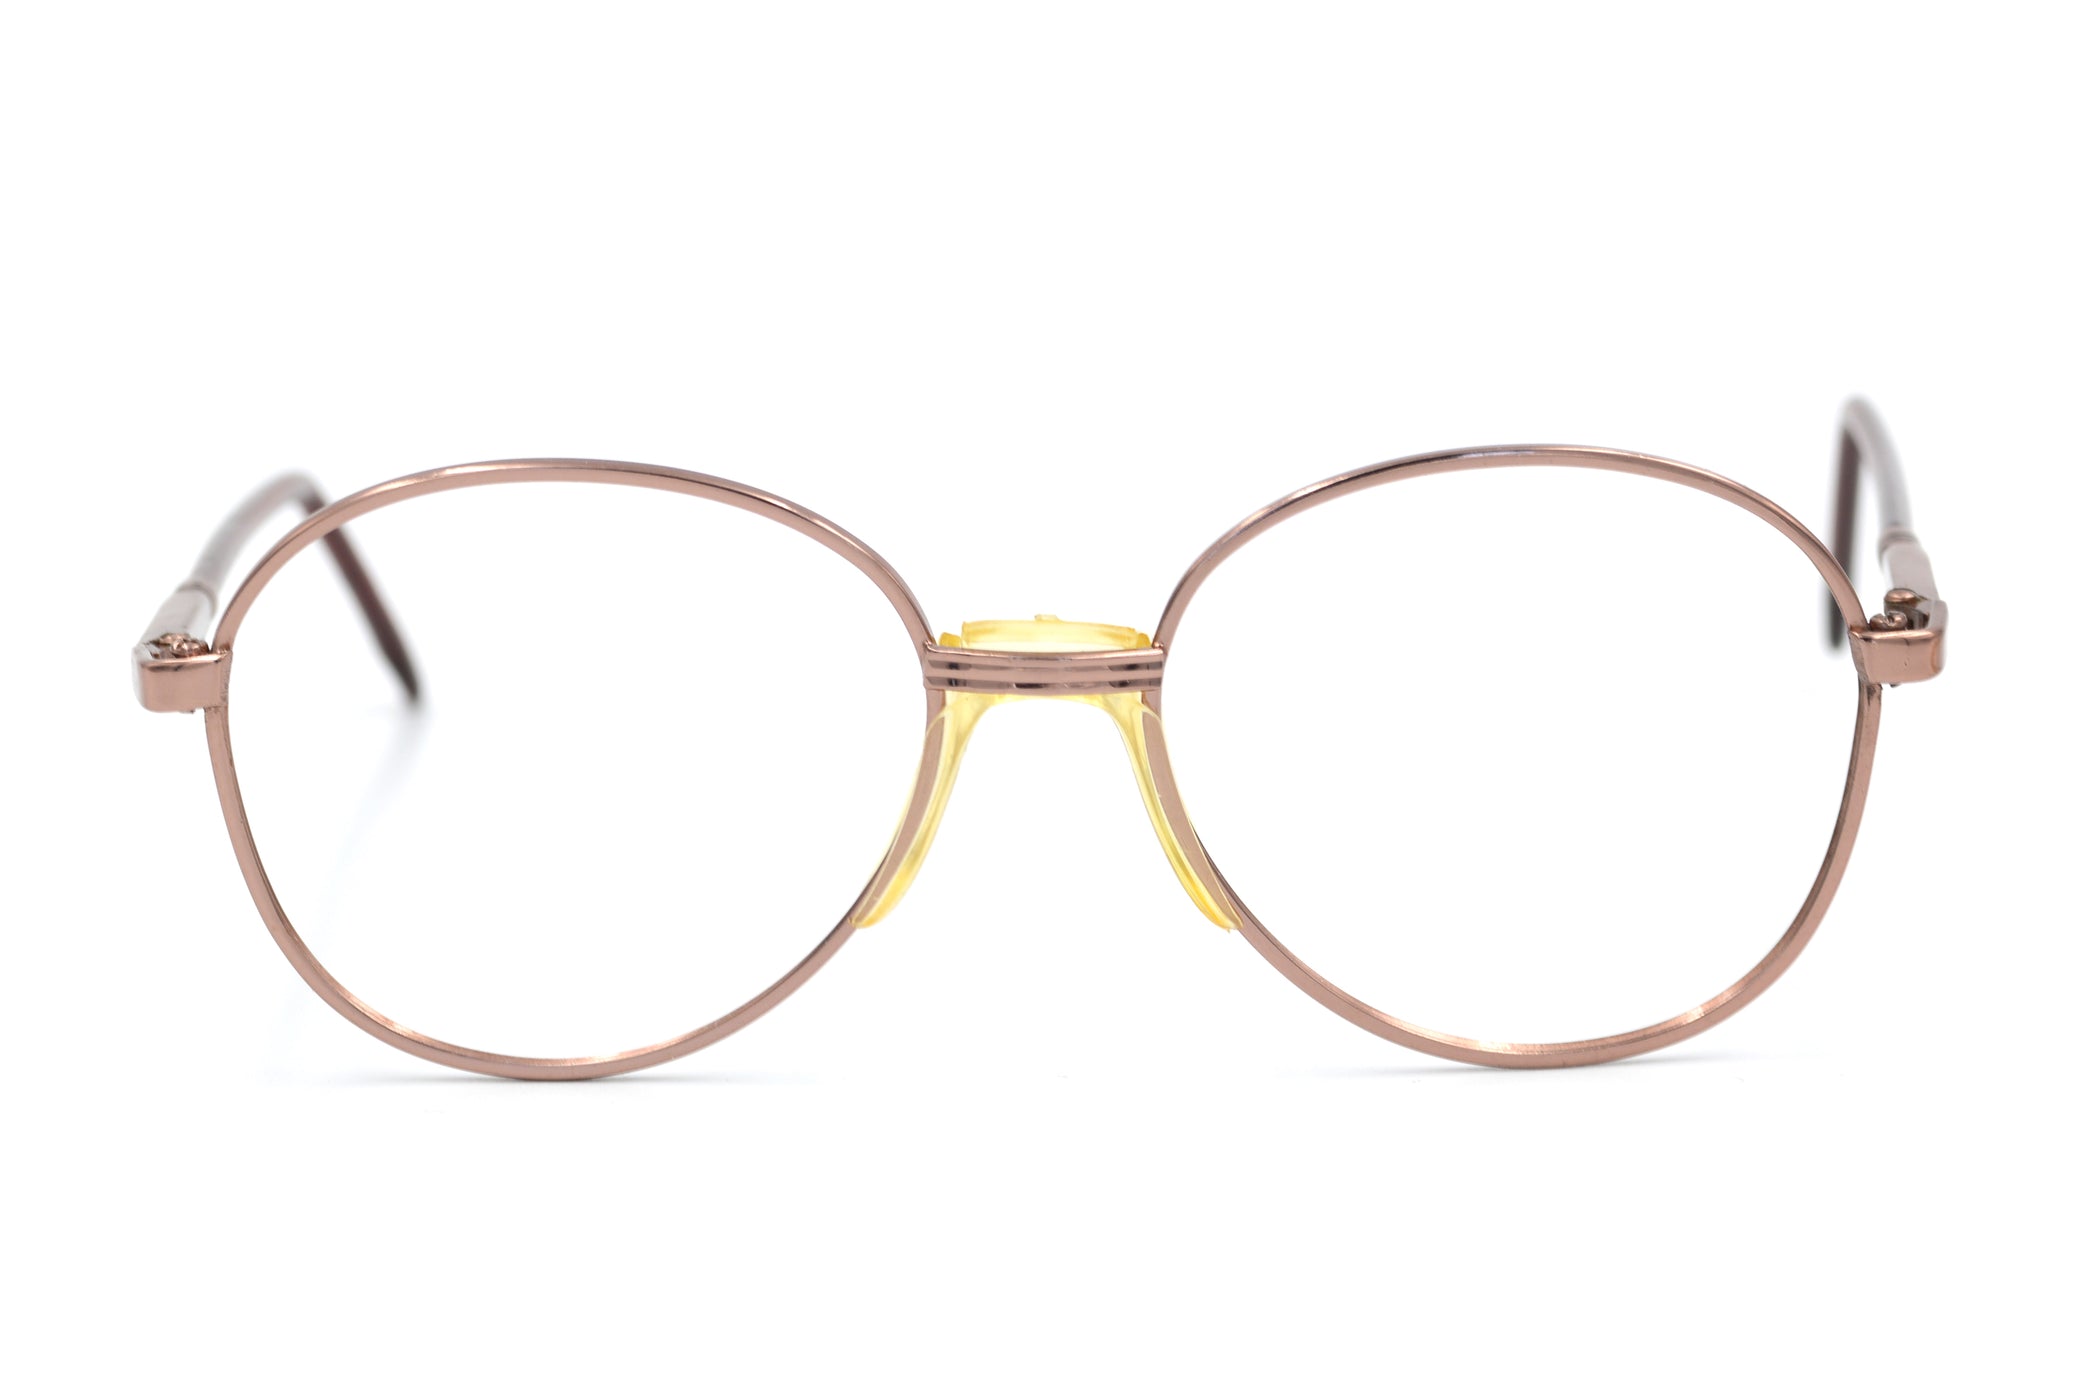 Bett Vintage Glasses, Cheap Vintage Glasses, 1980's vintage glasses. Repro Vintage Glasses. Retro Glasses